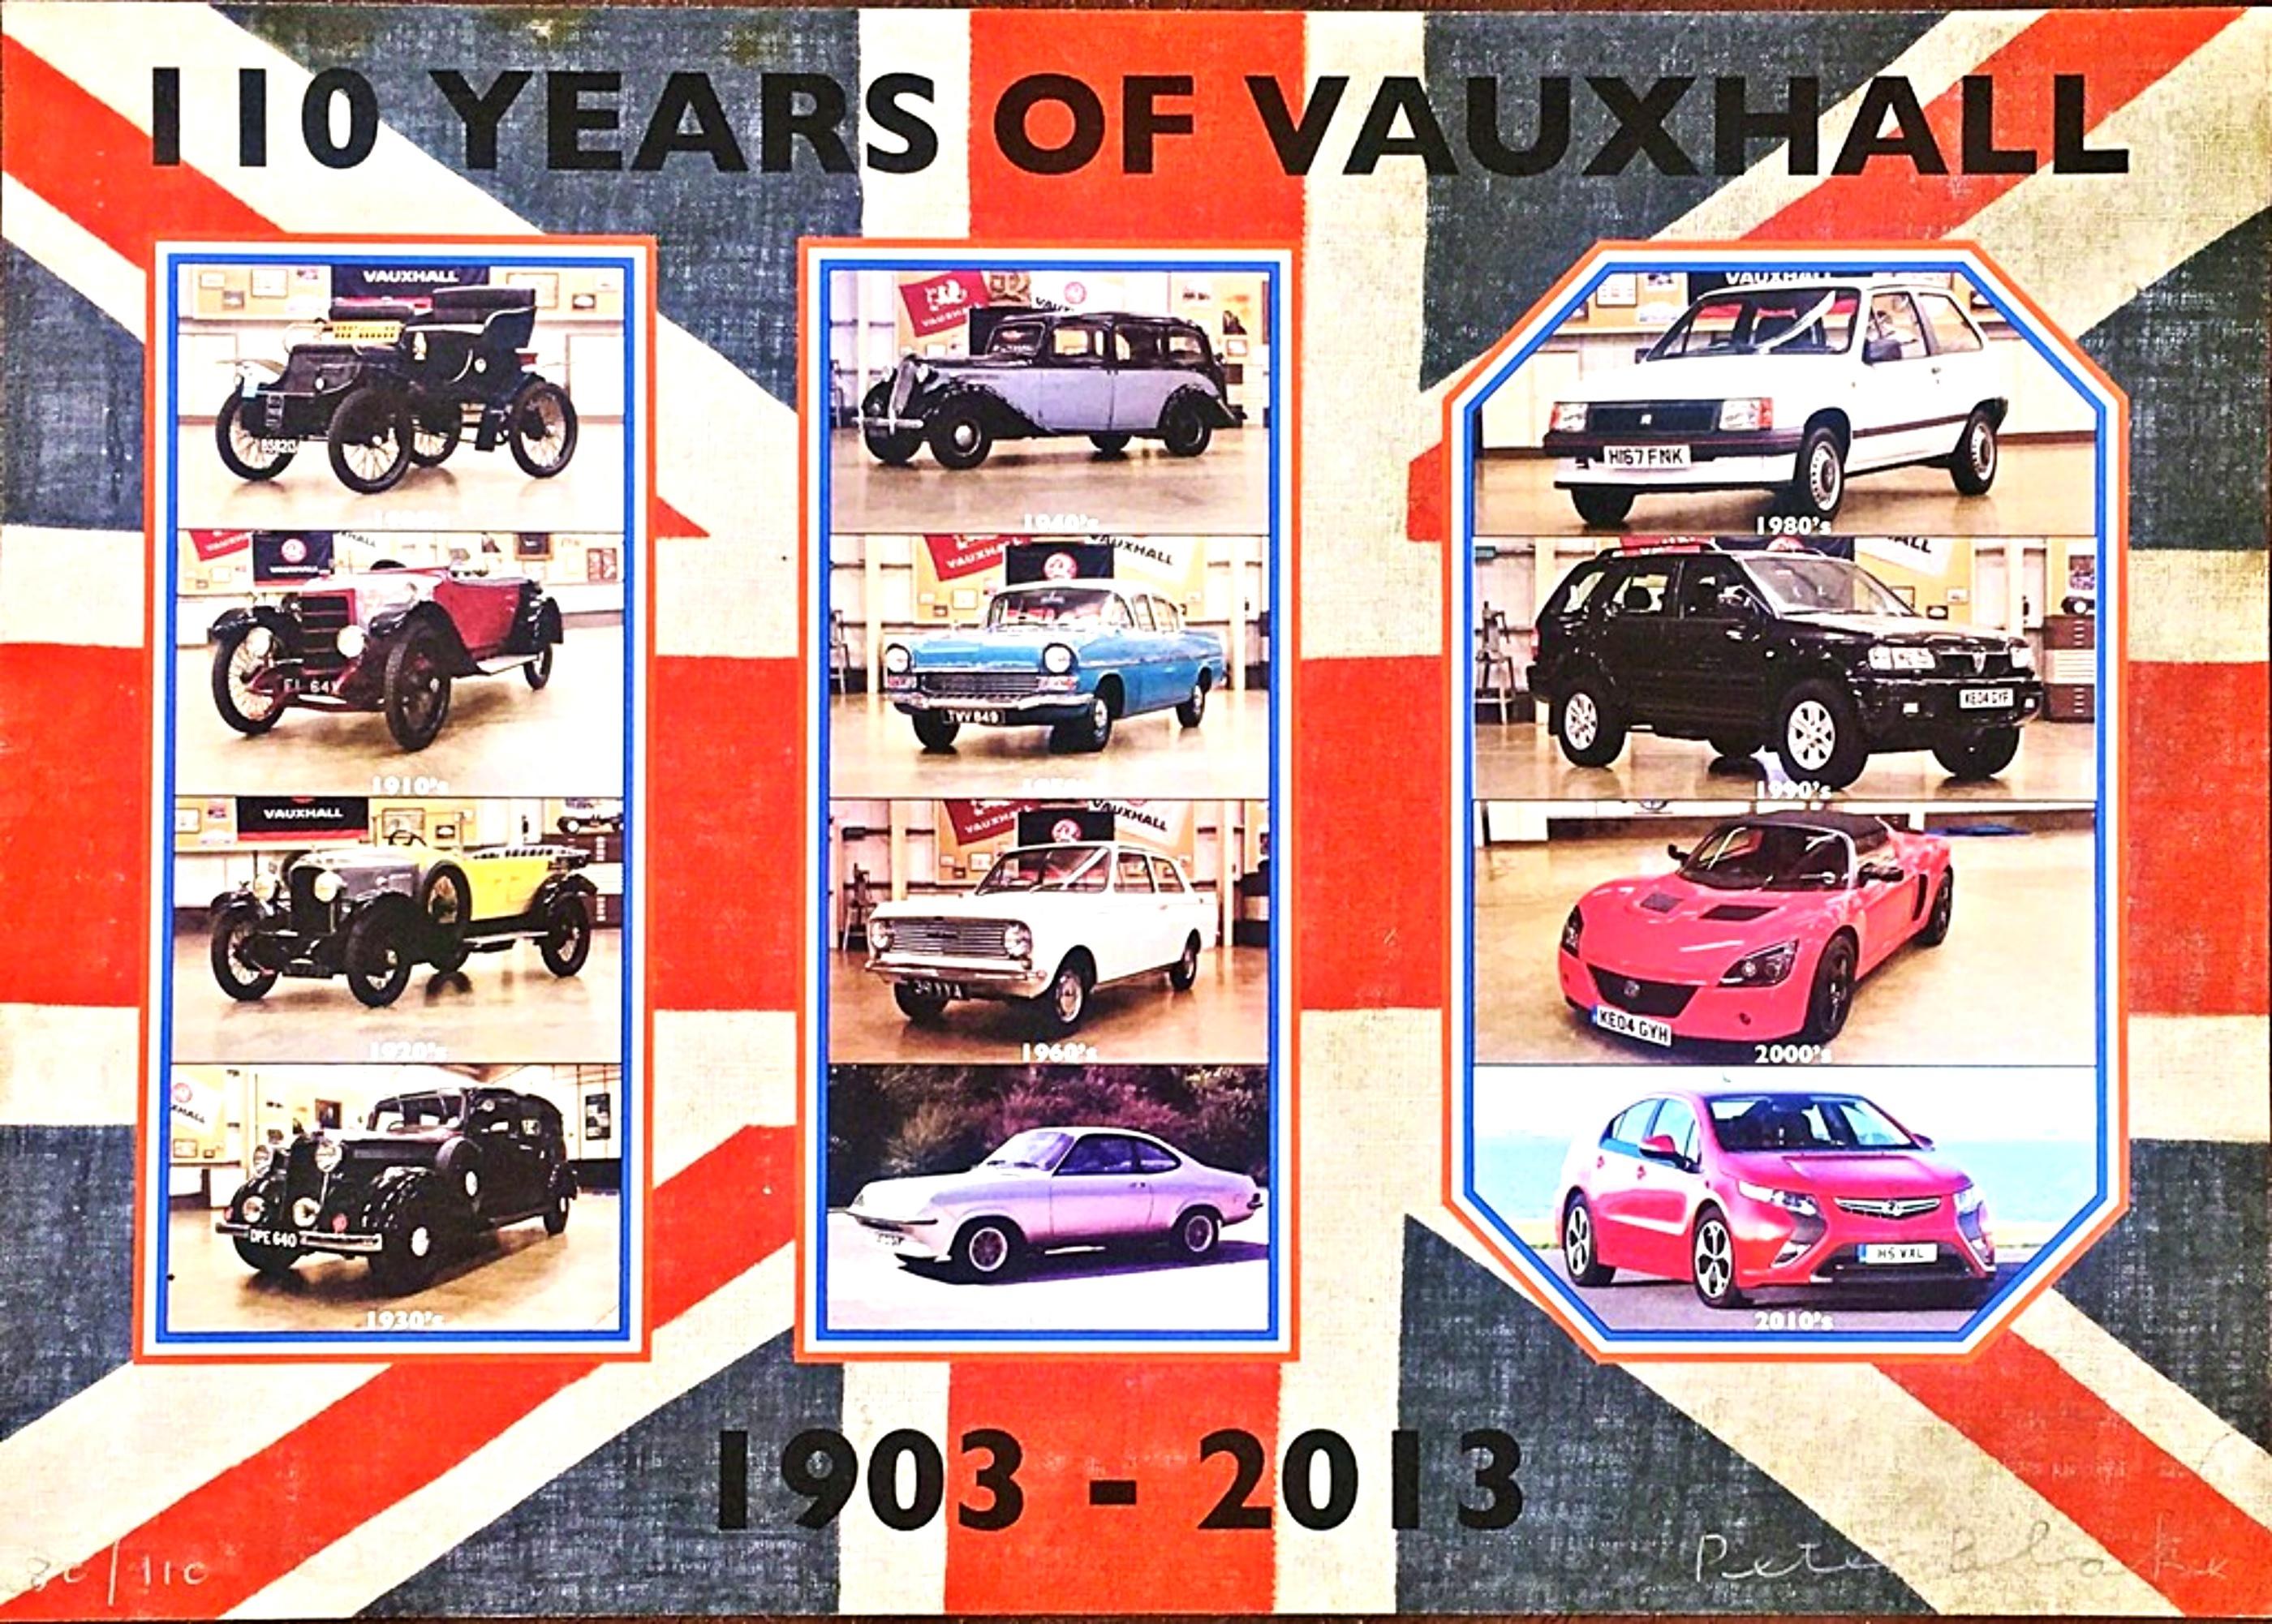 110 Years of Vauxhall